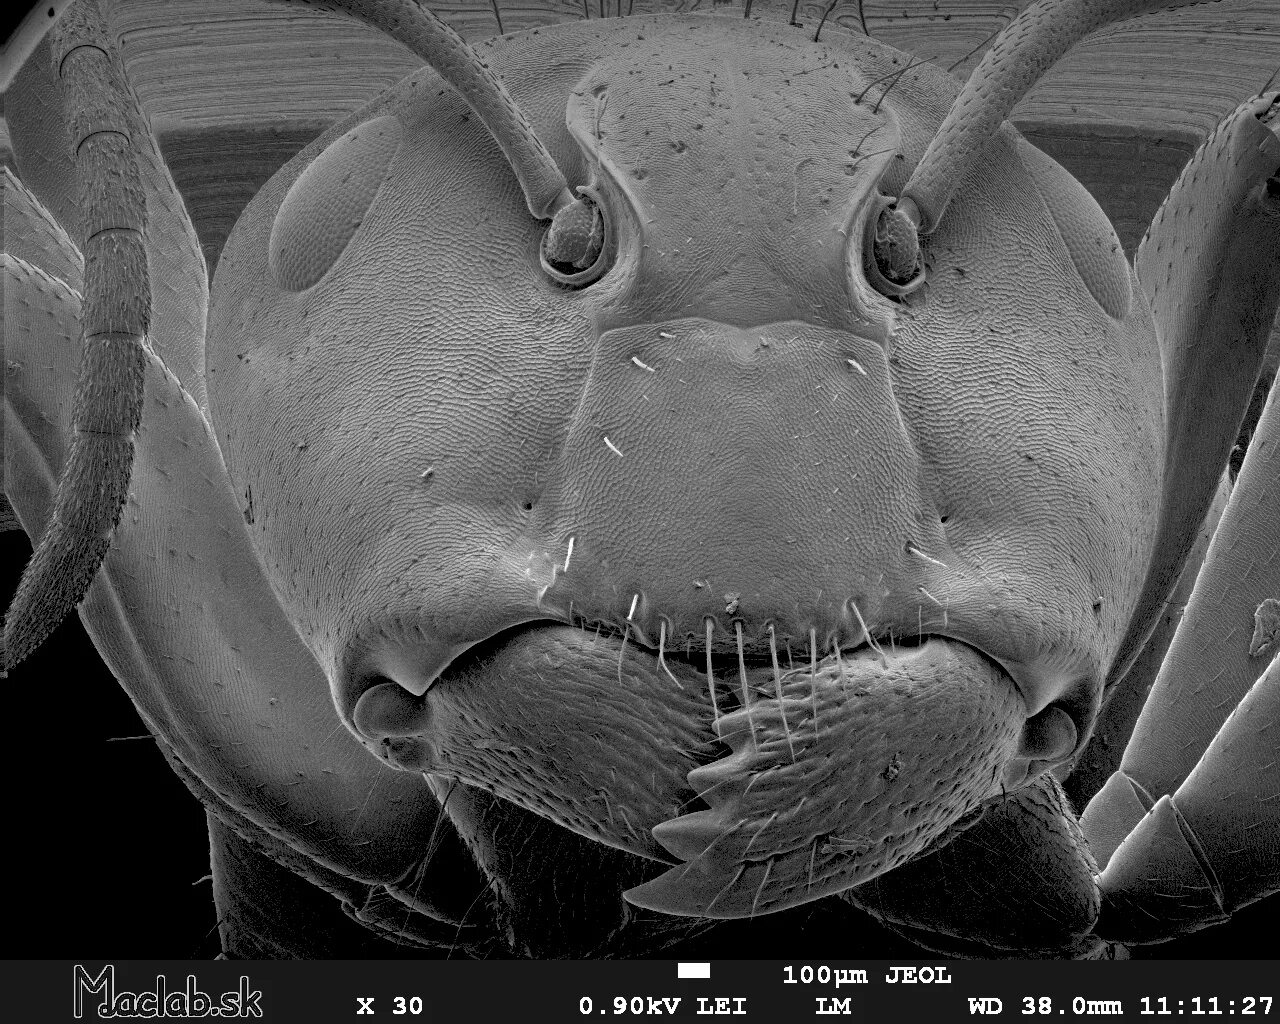 Мошка под микроскопом фото. Мошка гнус под микроскопом. Мошка под микроскопом челюсти. Астраханская мошка под микроскопом. Рот мошки под микроскопом челюсти.